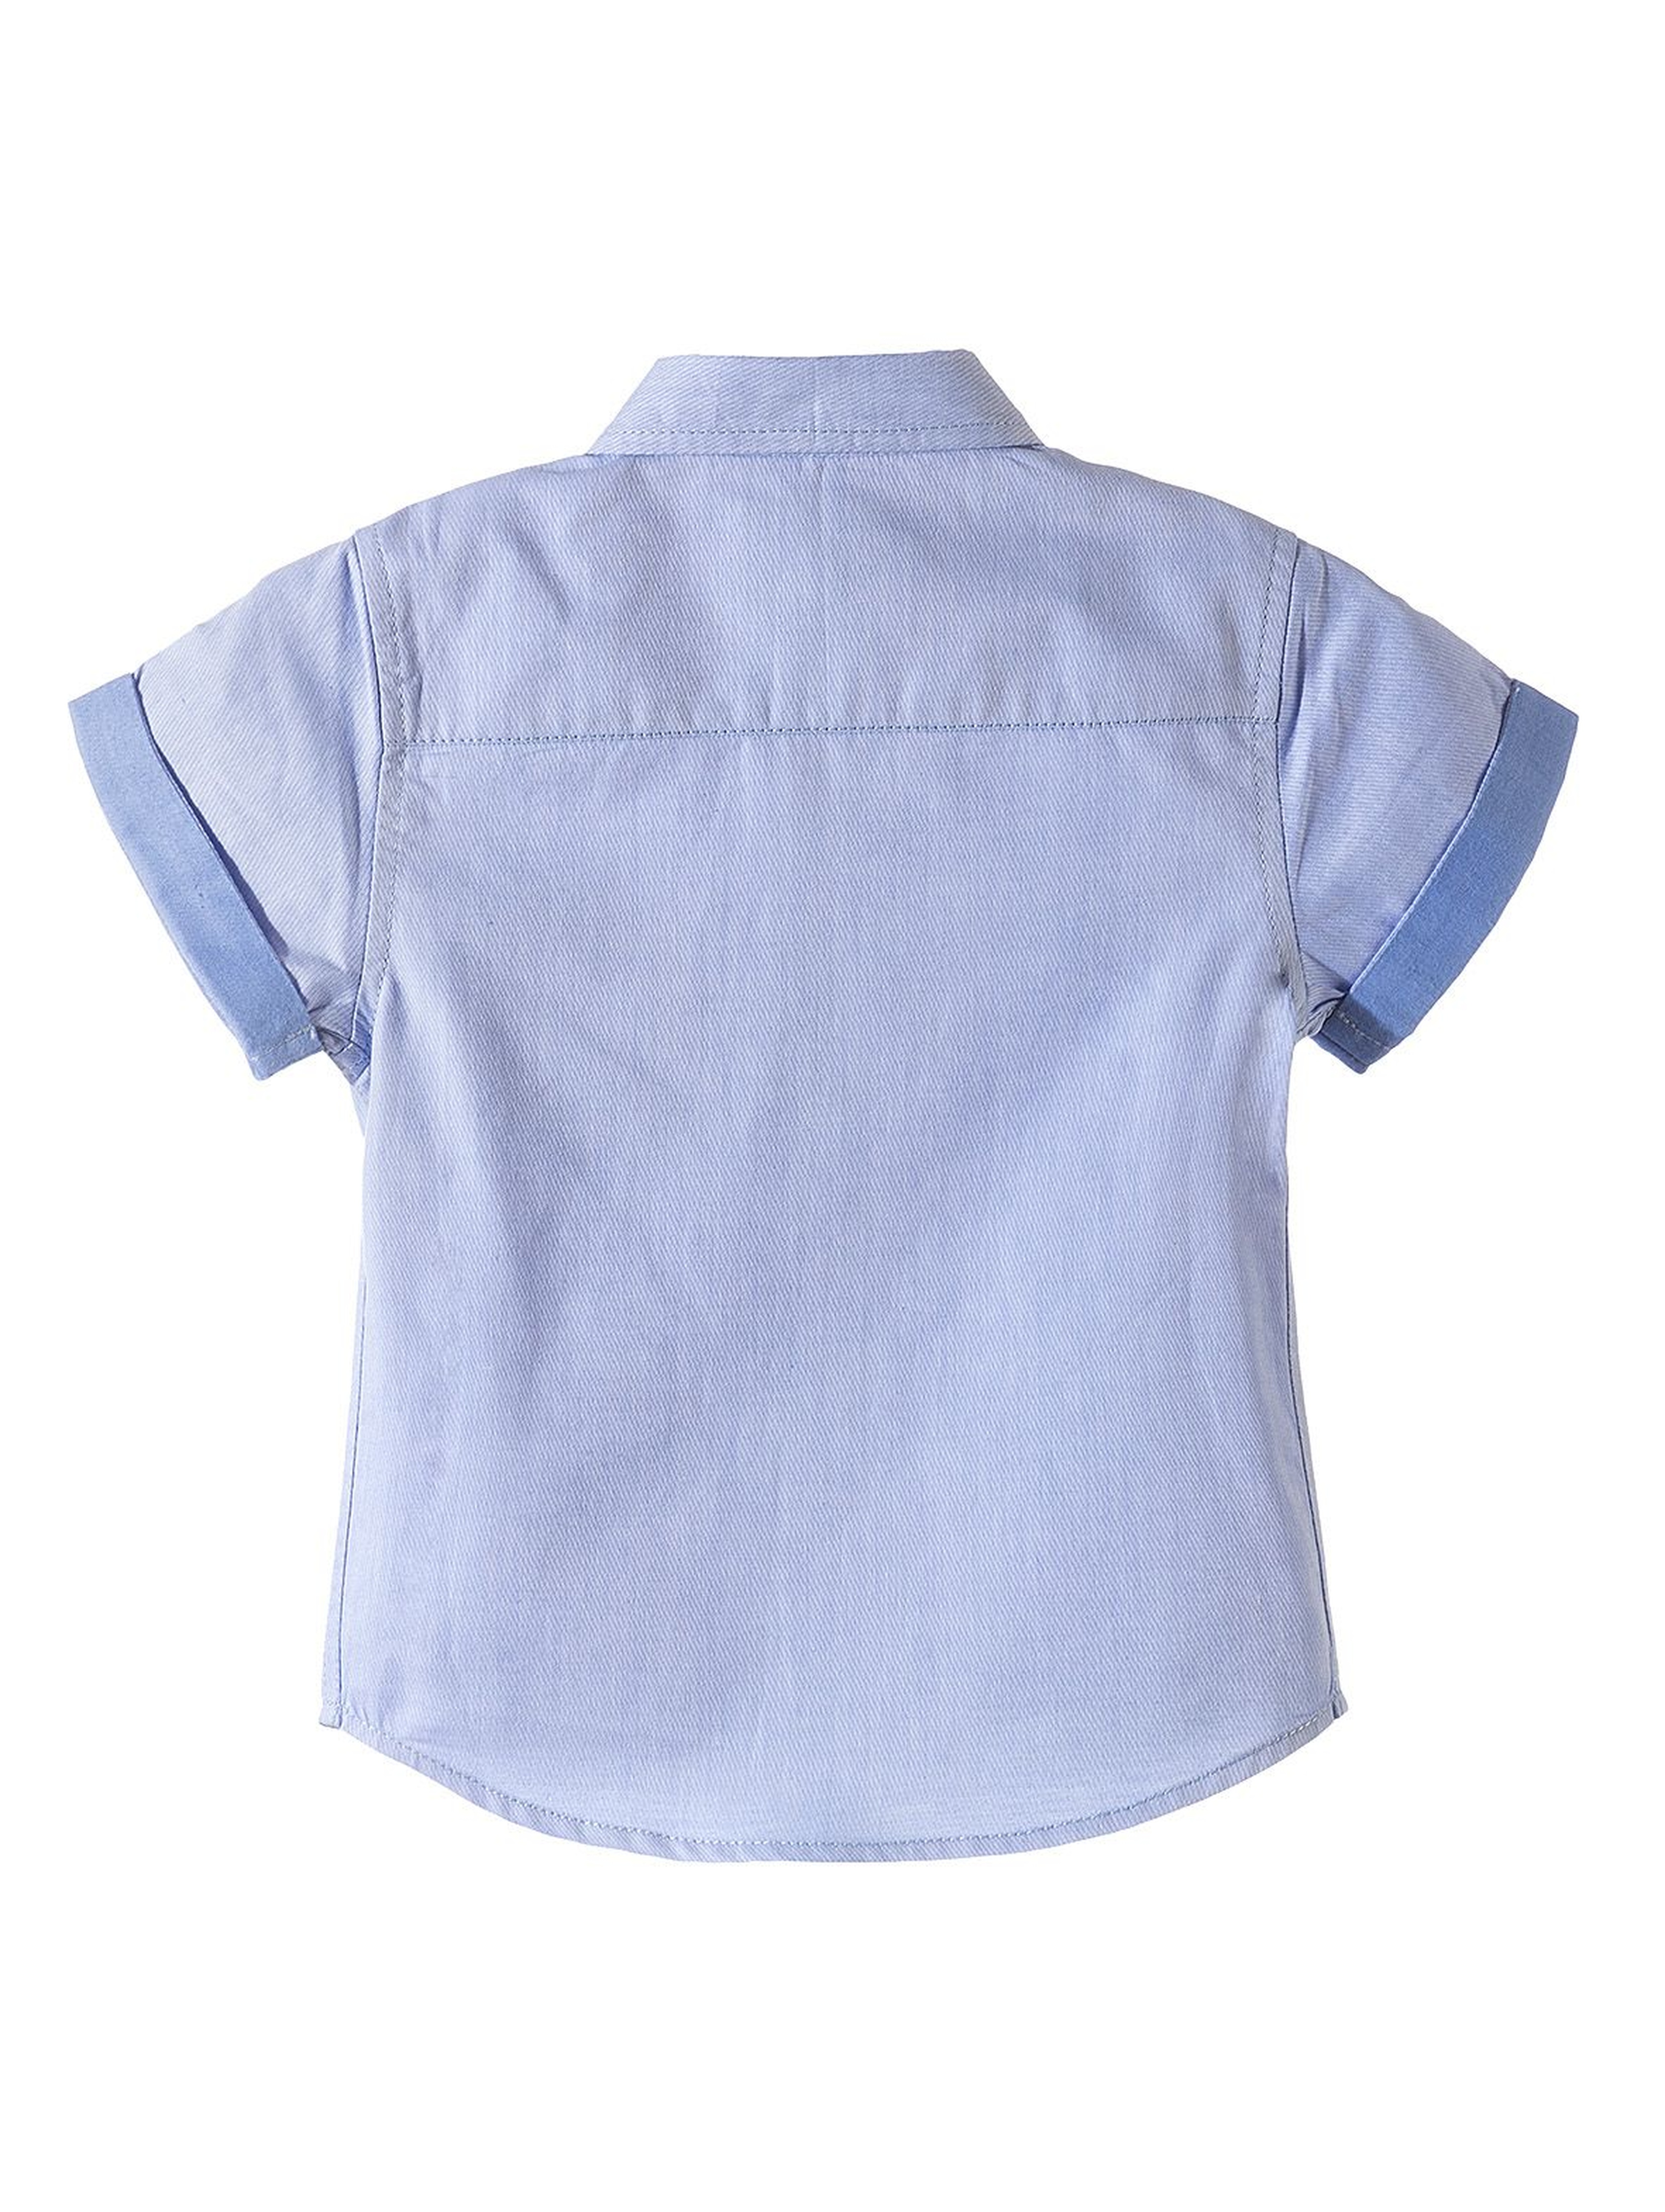 Koszula z krótkim rękawem dla chłopca-niebieska